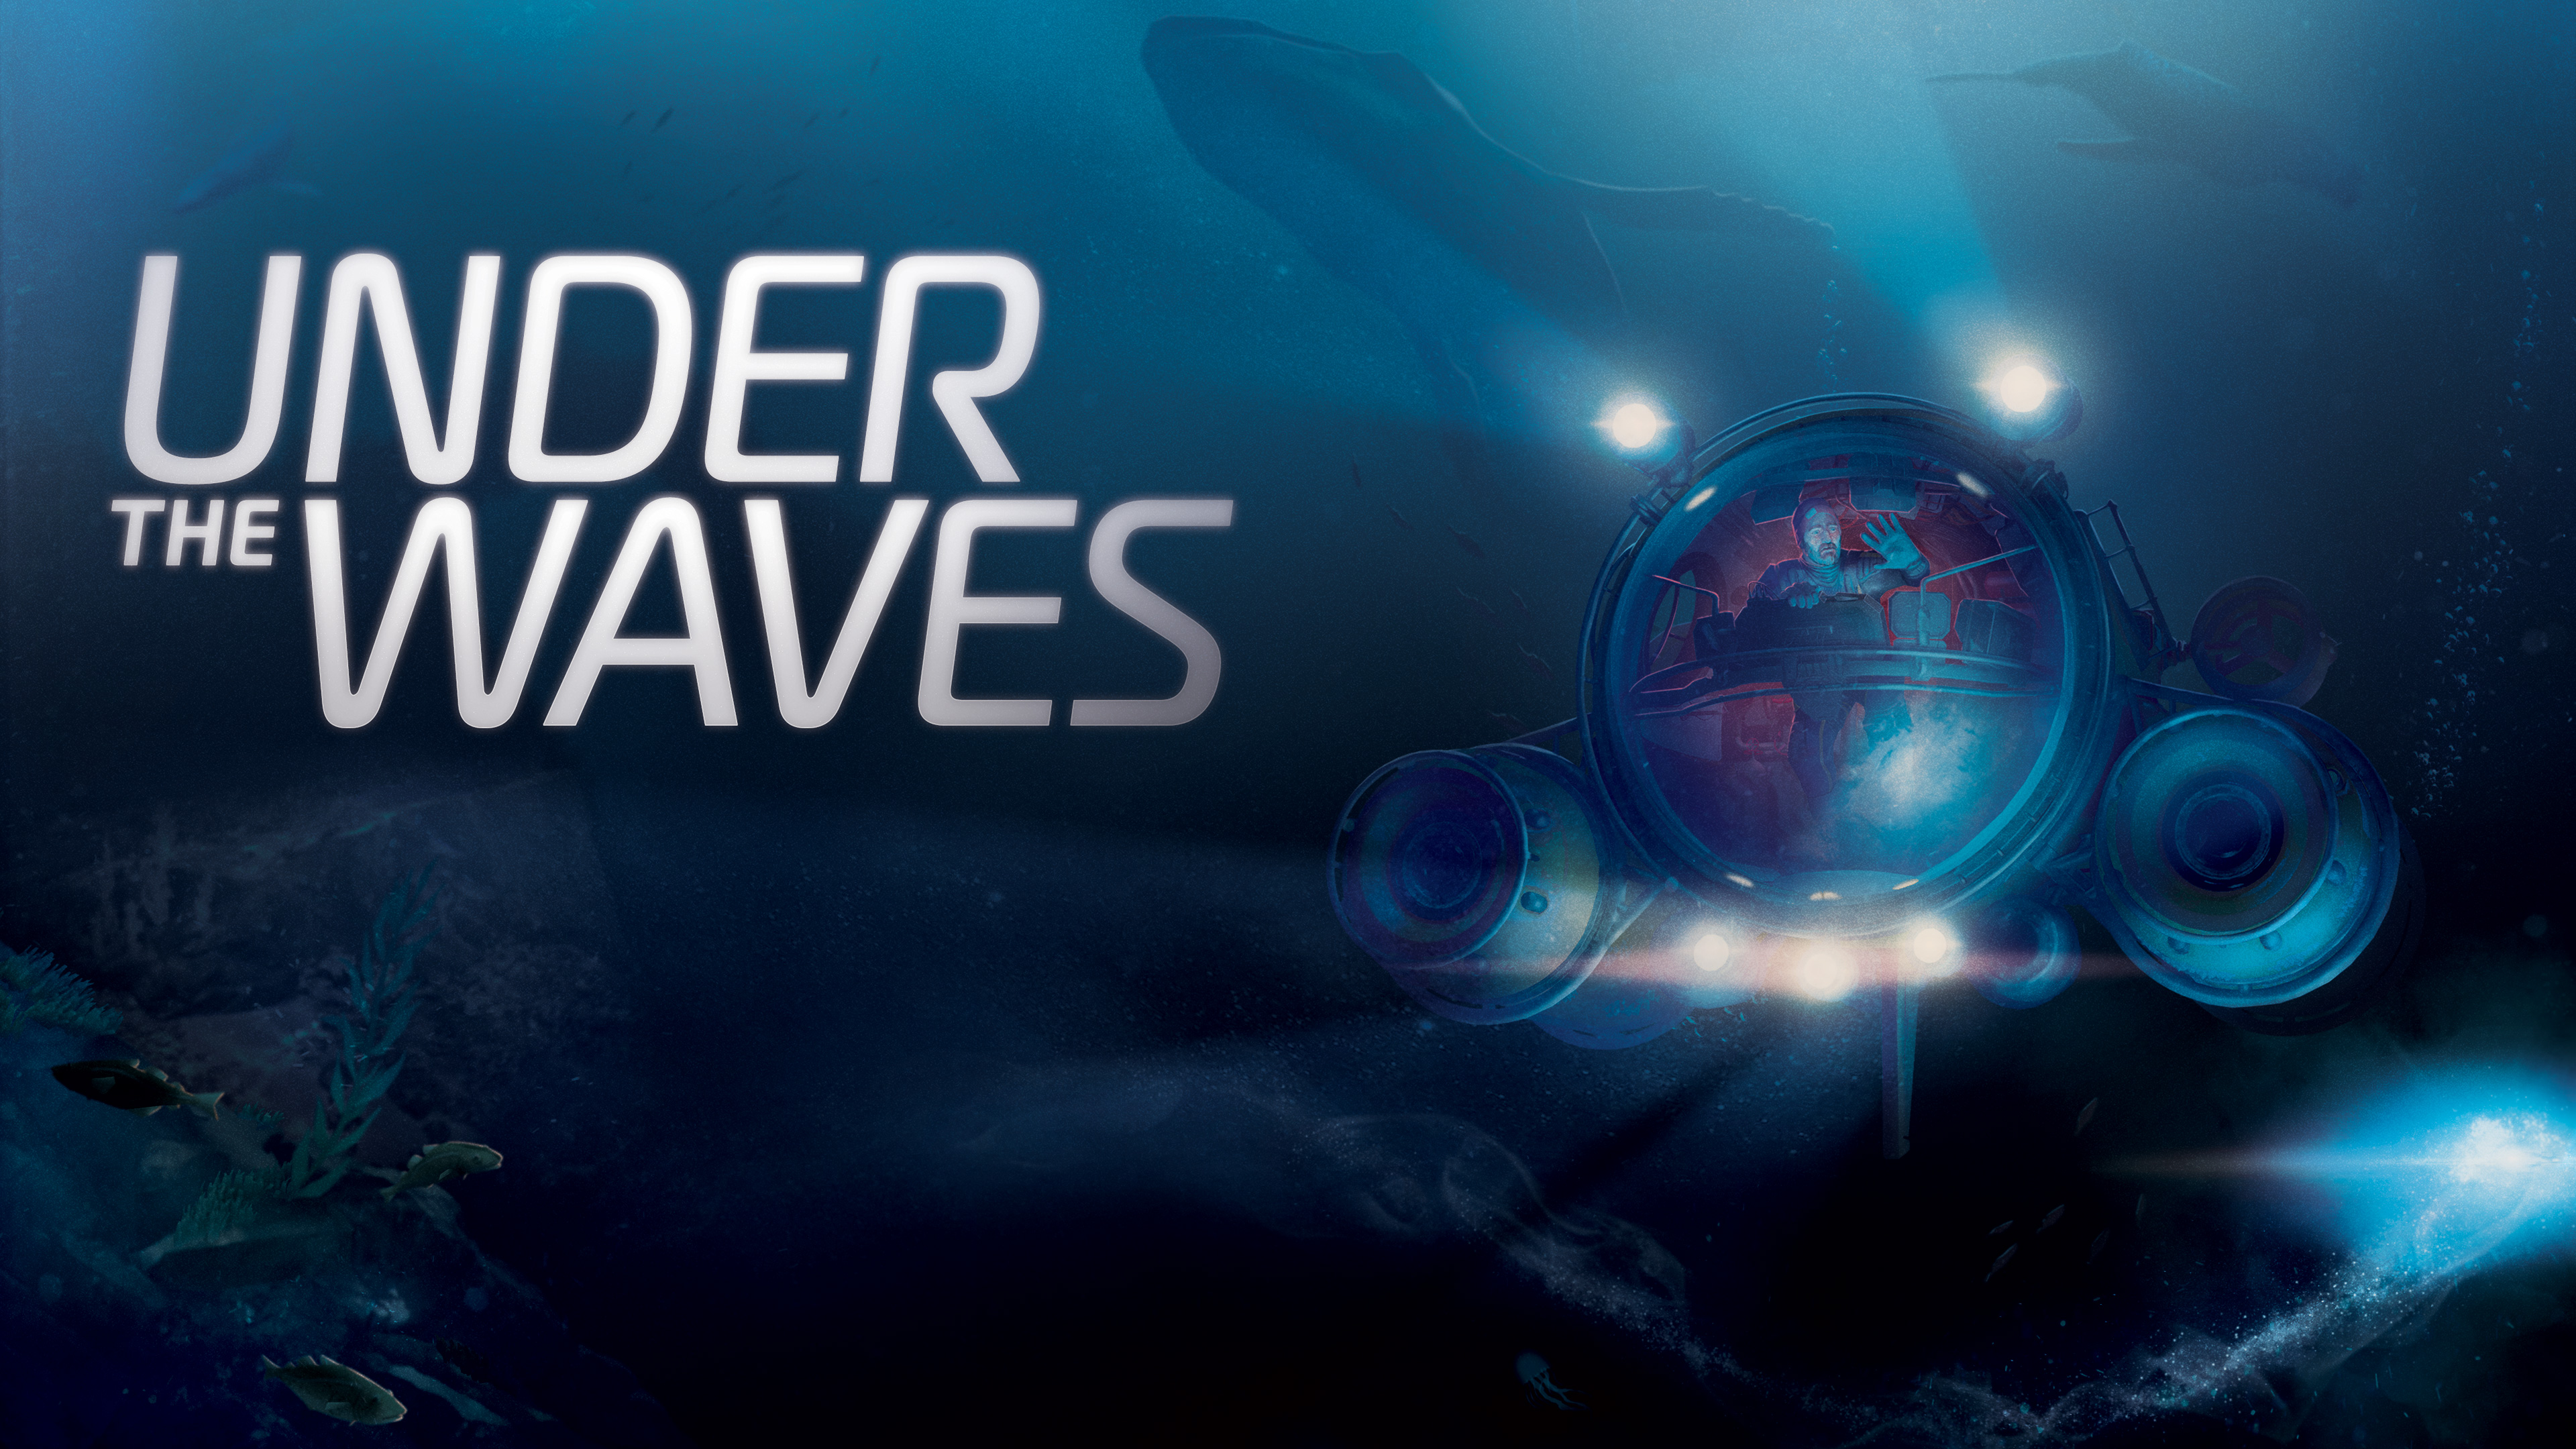 Extrait du jeu vidéo Under The Waves dans l'action se situe en mer du Nord © Parallel Studio/Quantic Dream